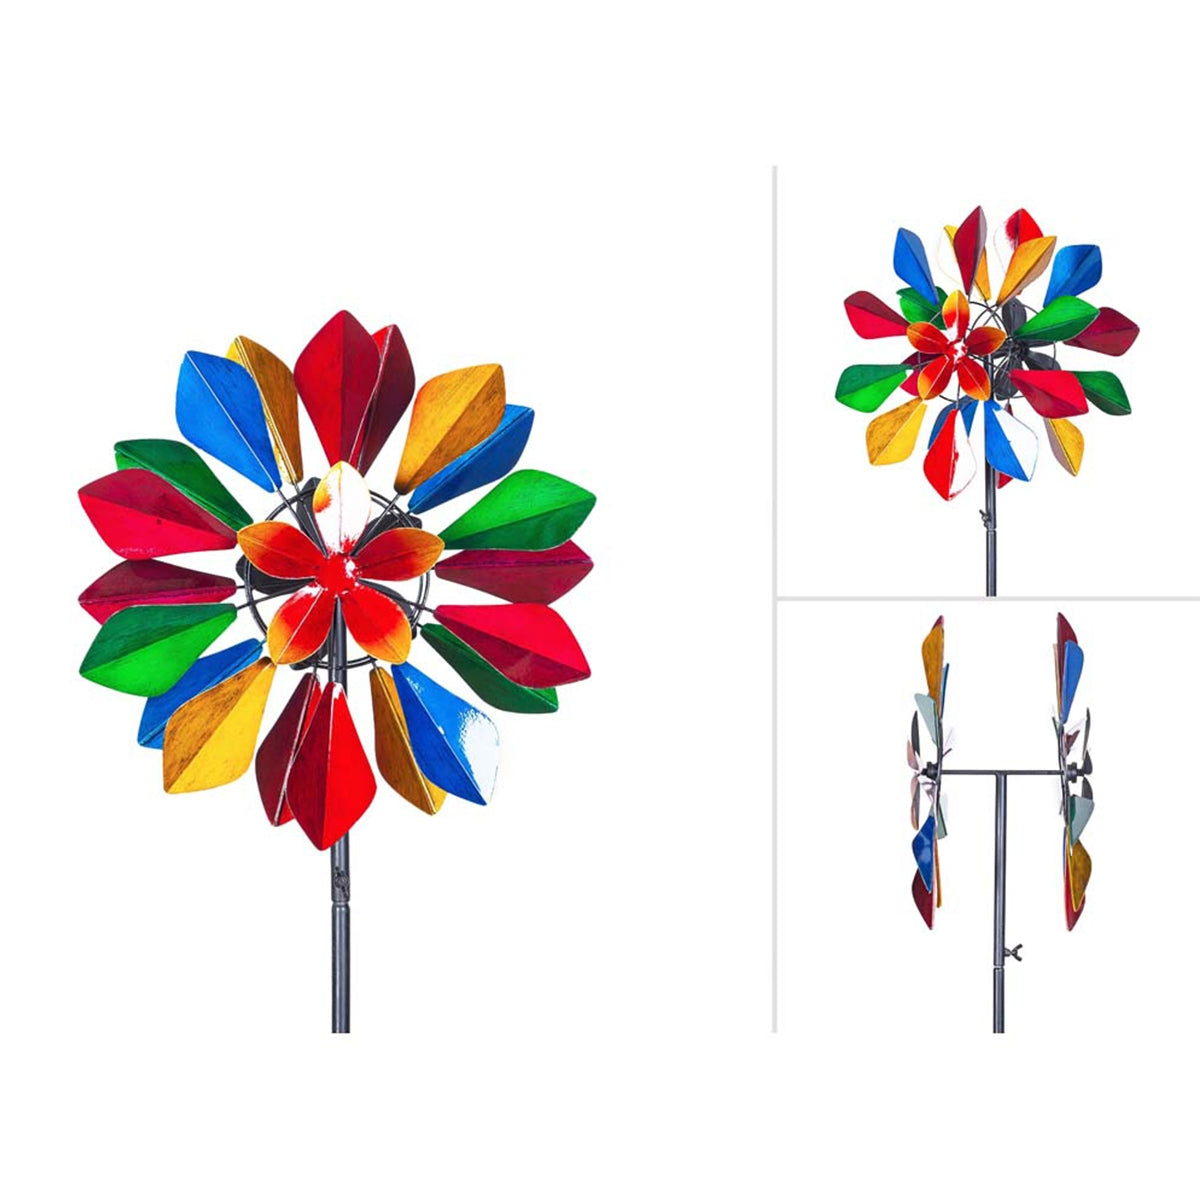 Kinetic Art Metall Windrad Multi-colored Flower Duett Windspiel Doppel Windrad Gartendeko